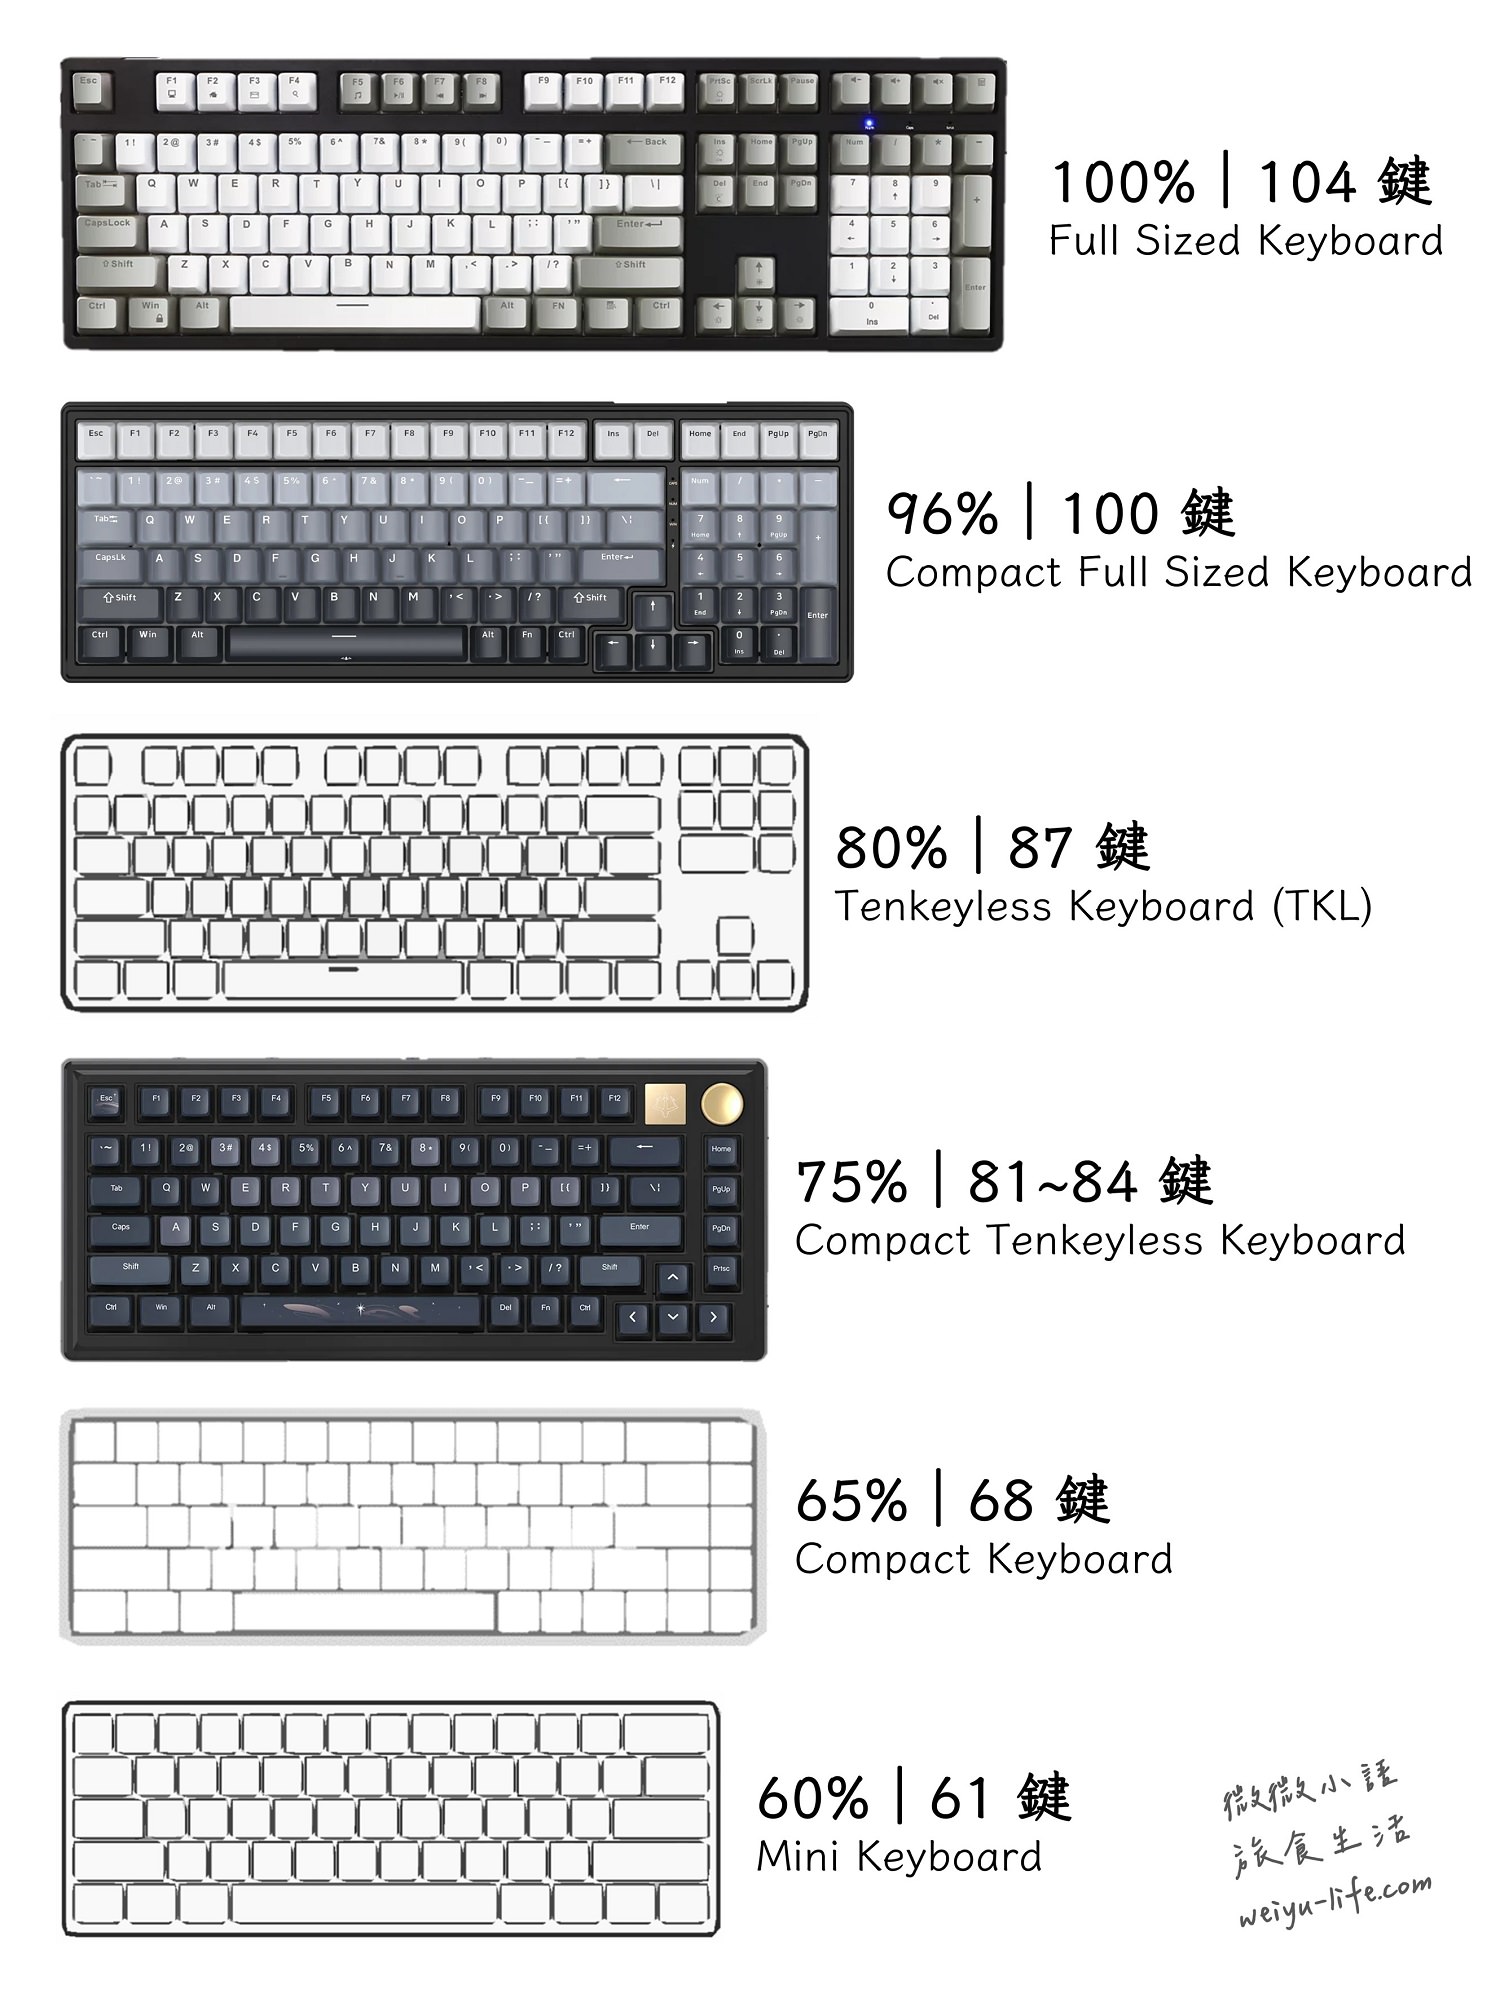 鍵盤大小比較圖